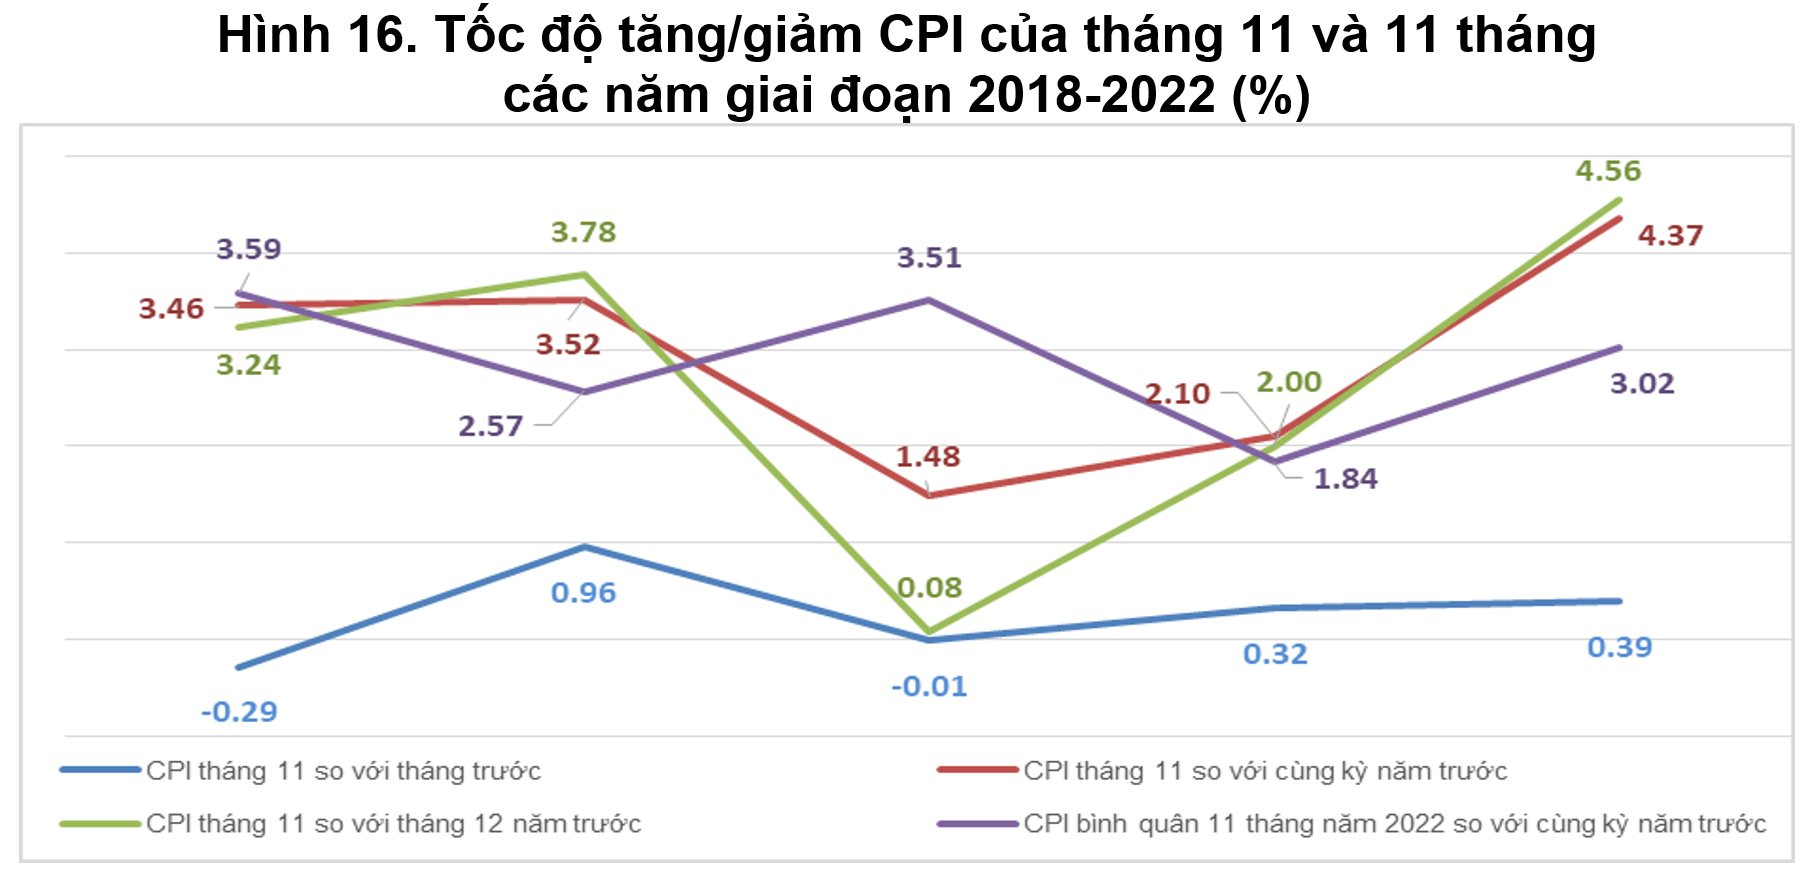 CPI tháng 11 tăng 4,37% so với cùng kỳ - Ảnh 1.